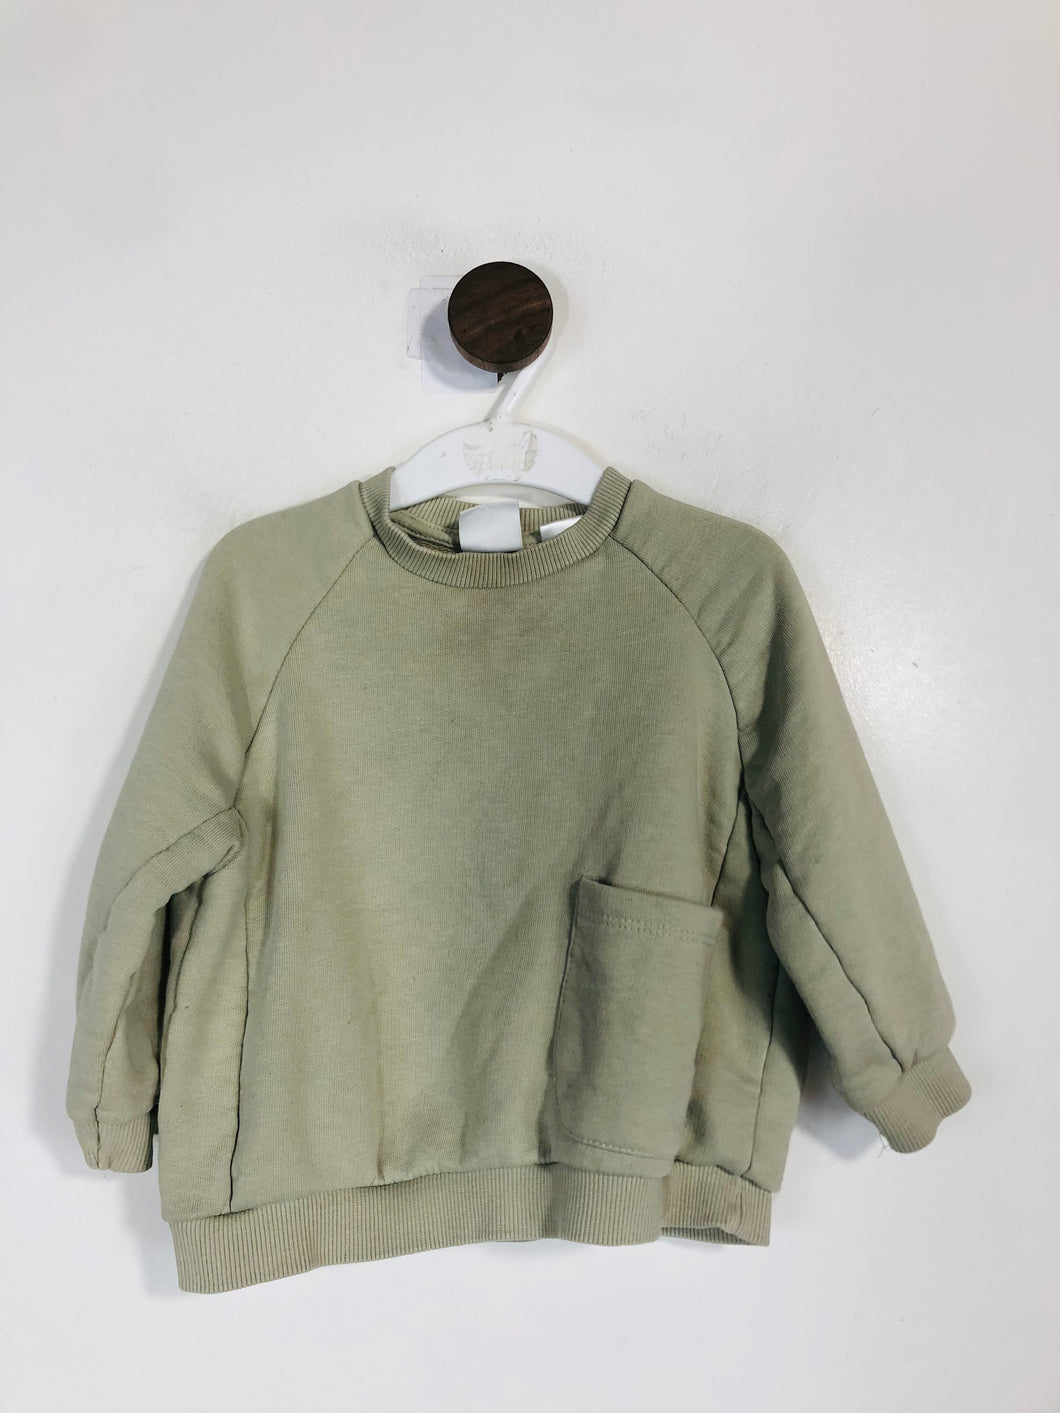 Zara Kid's Sweatshirt | 18-24 Months | Green